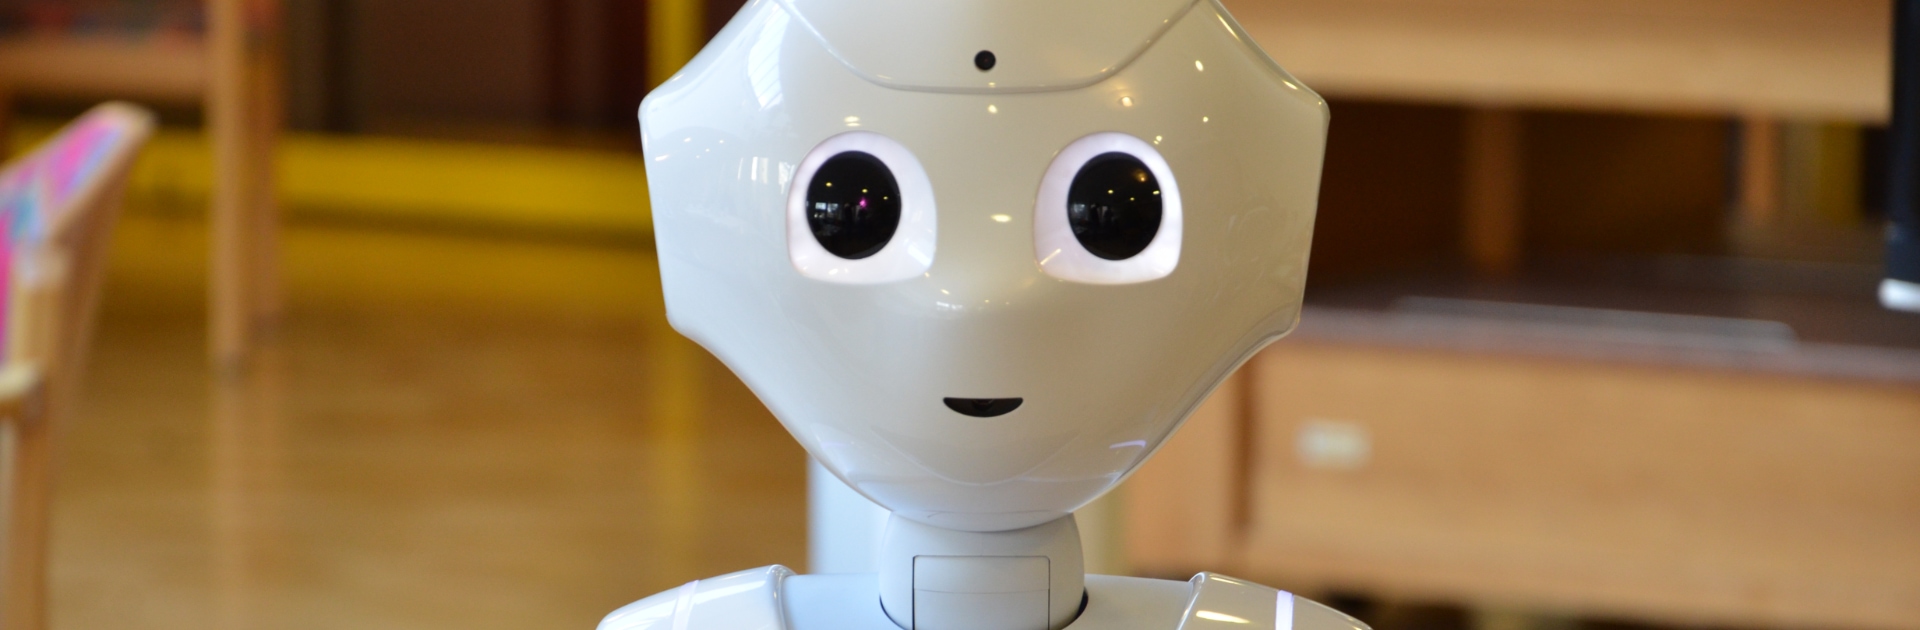 Roboter Pepper: vom Prototyp zur echten Bereicherung